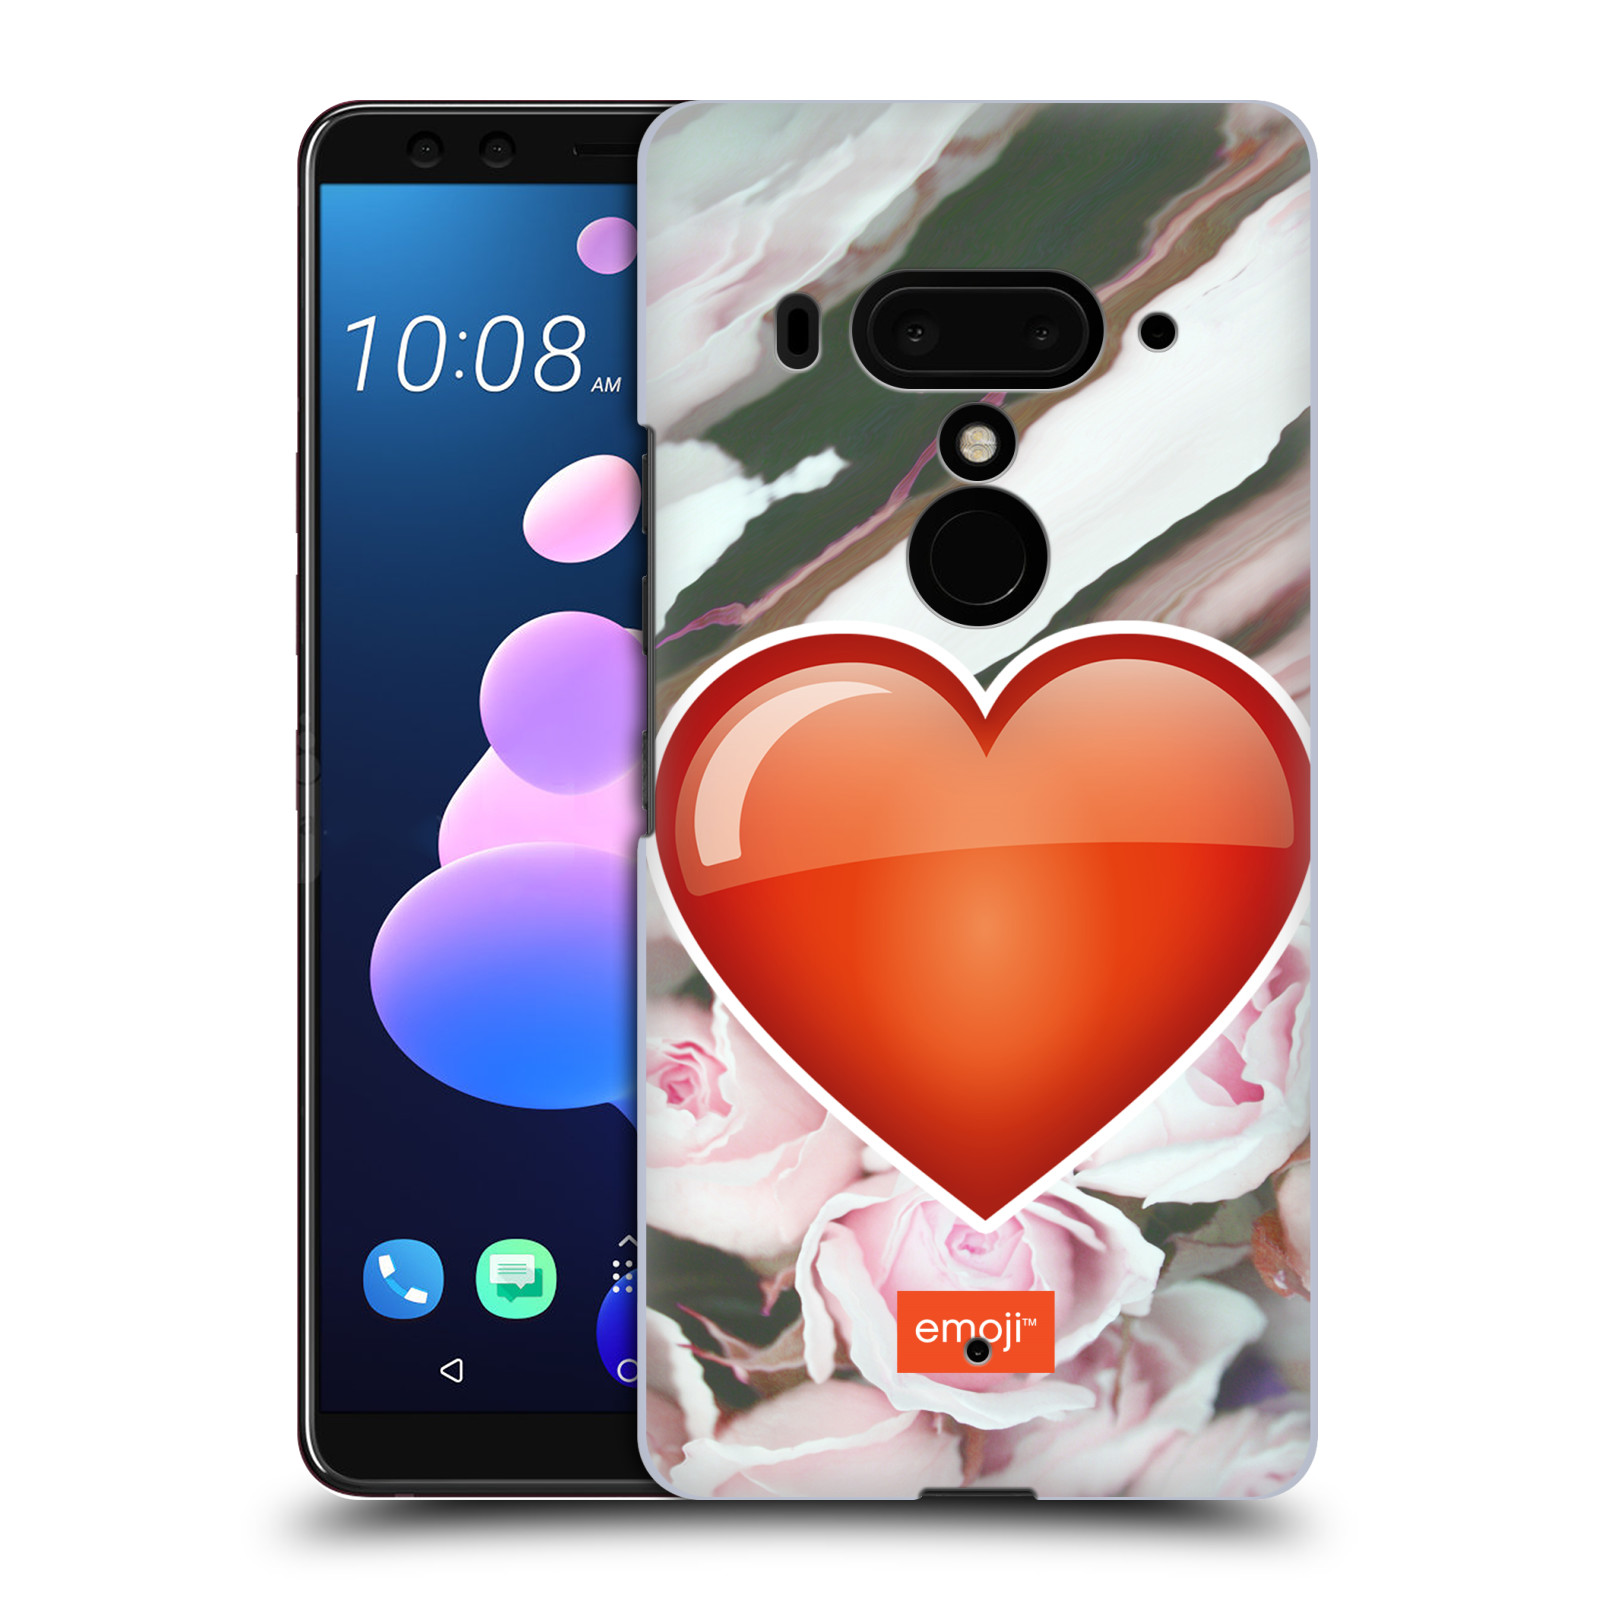 Pouzdro na mobil HTC U 12 PLUS / U 12+ DUAL SIM - HEAD CASE - Emoji srdíčko